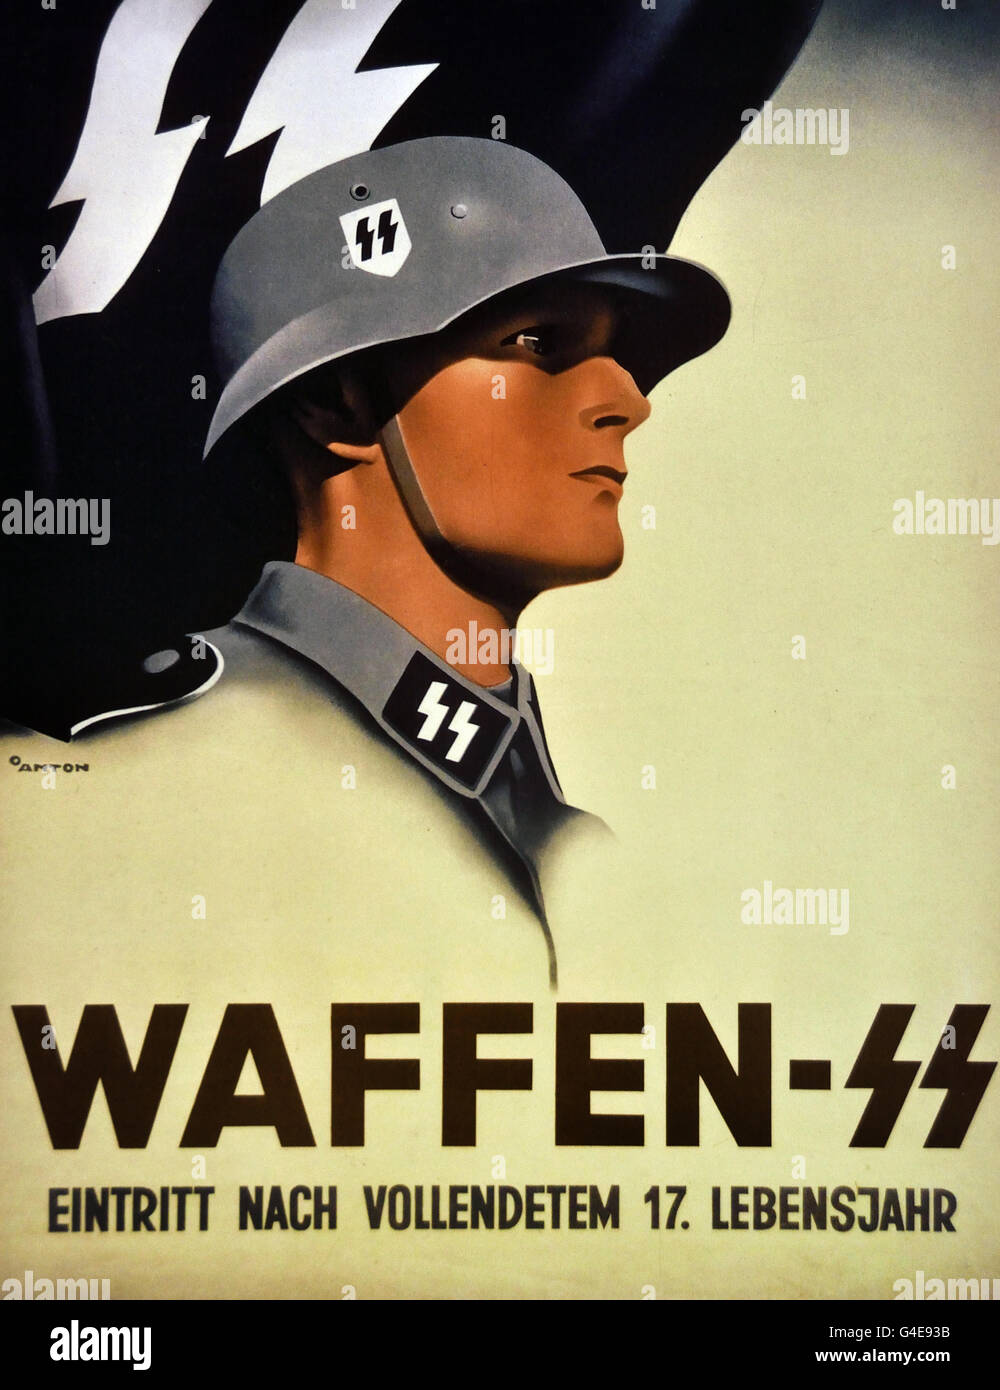 Affiche De Recrutement Pour La Waffen Ss Pour l'affiche de recrutement des bénévoles pour les Waffen-SS 1941( Waffen- SS, inscrivez-vous à 17 ans ou plus ) Topographie de la terreur sur le site  du musée historique de l'ancien quartier général